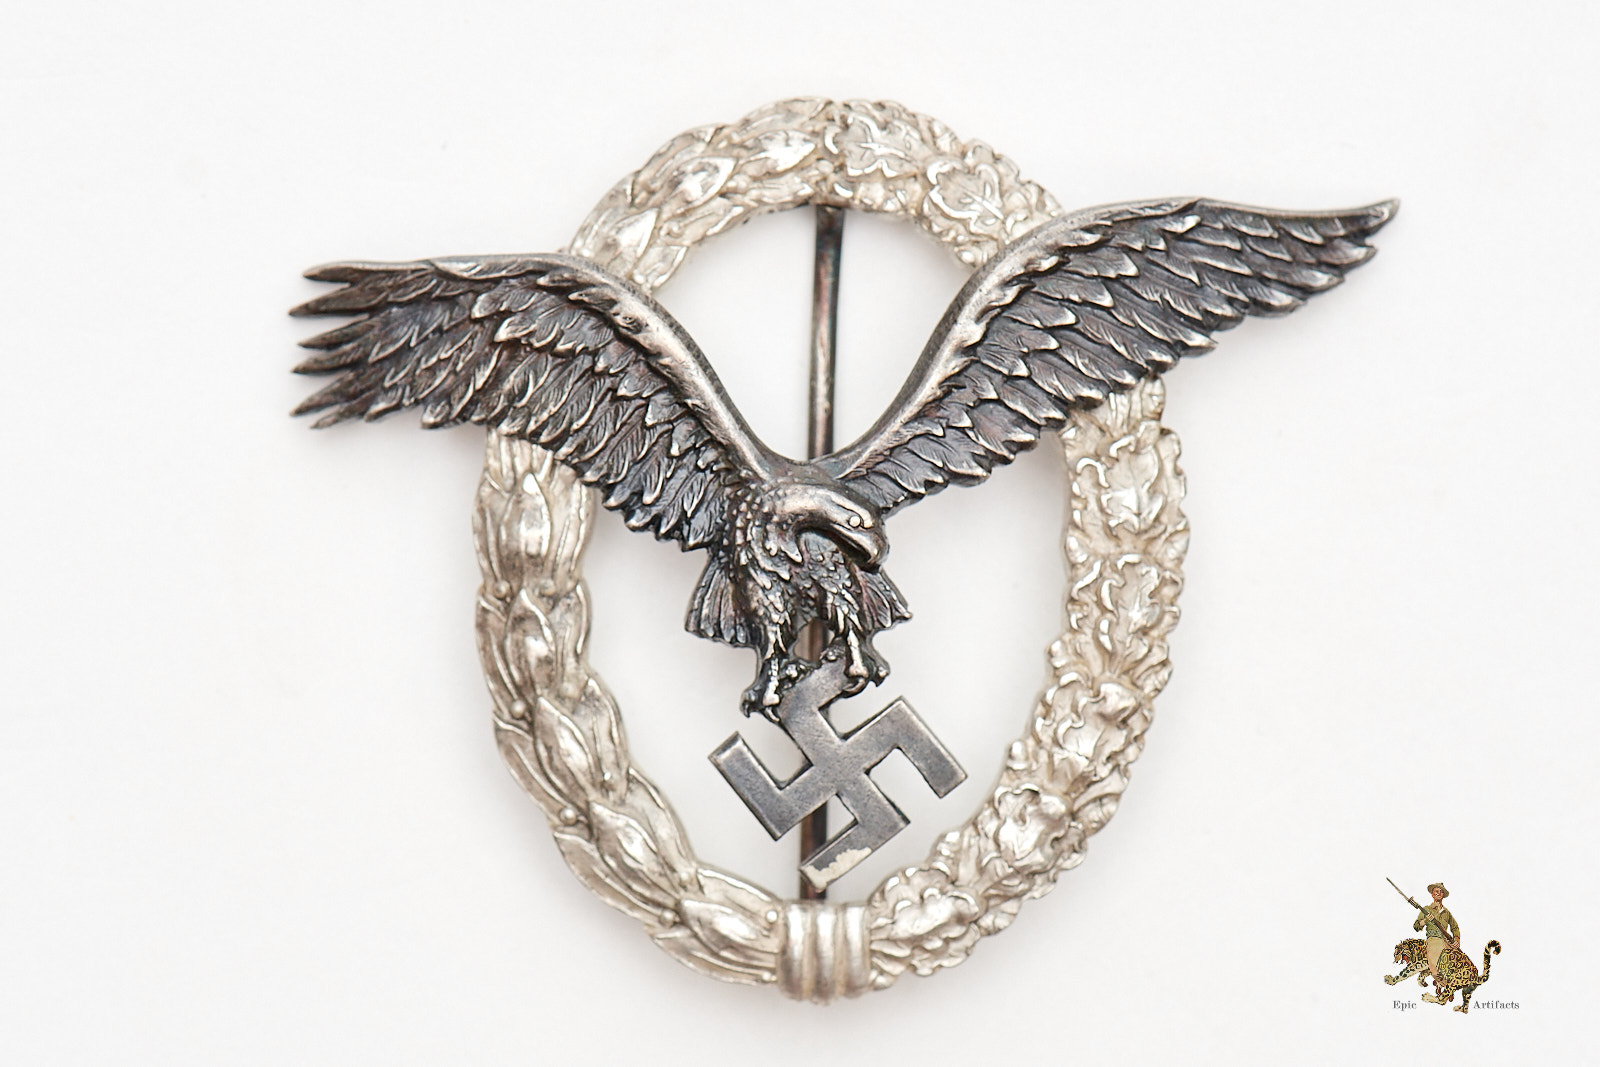 Epic CEJ Pilot Badge - Artifacts